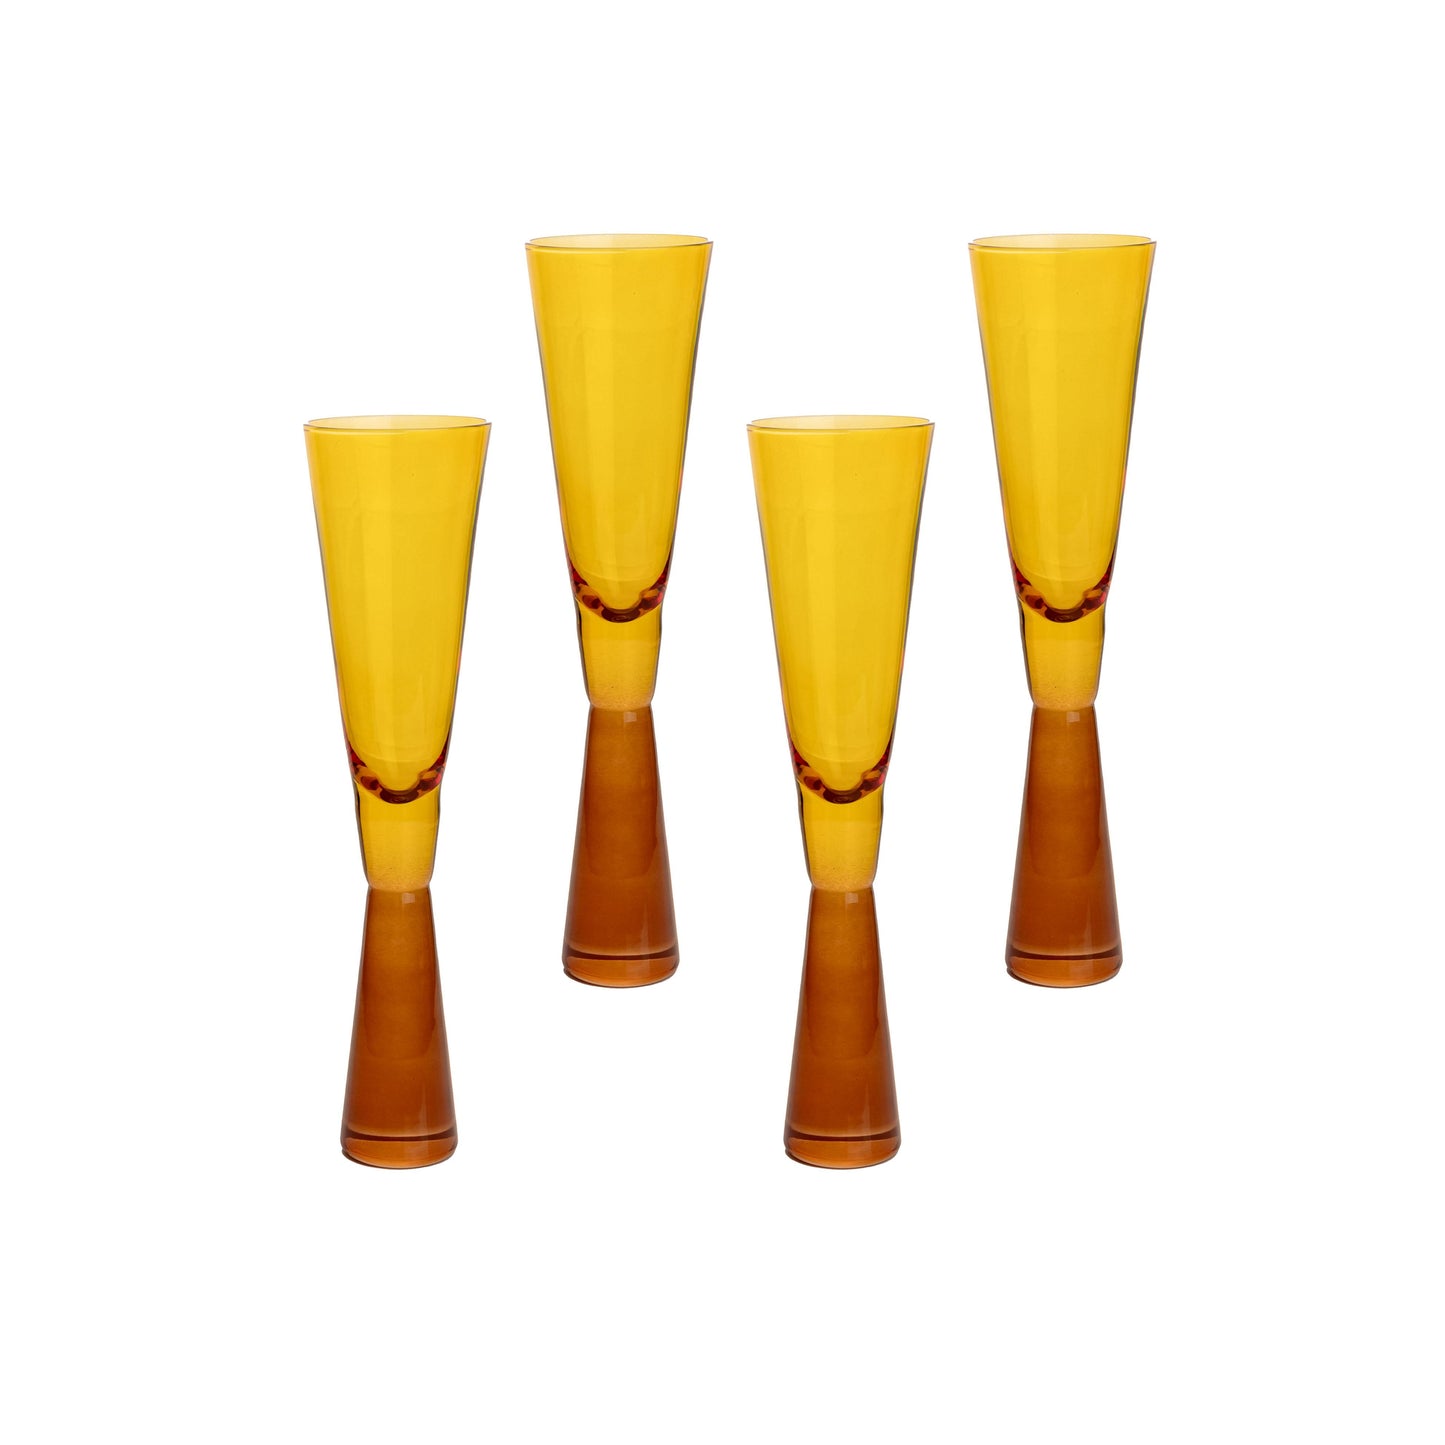 loosha amber champagne glasses - set of 4